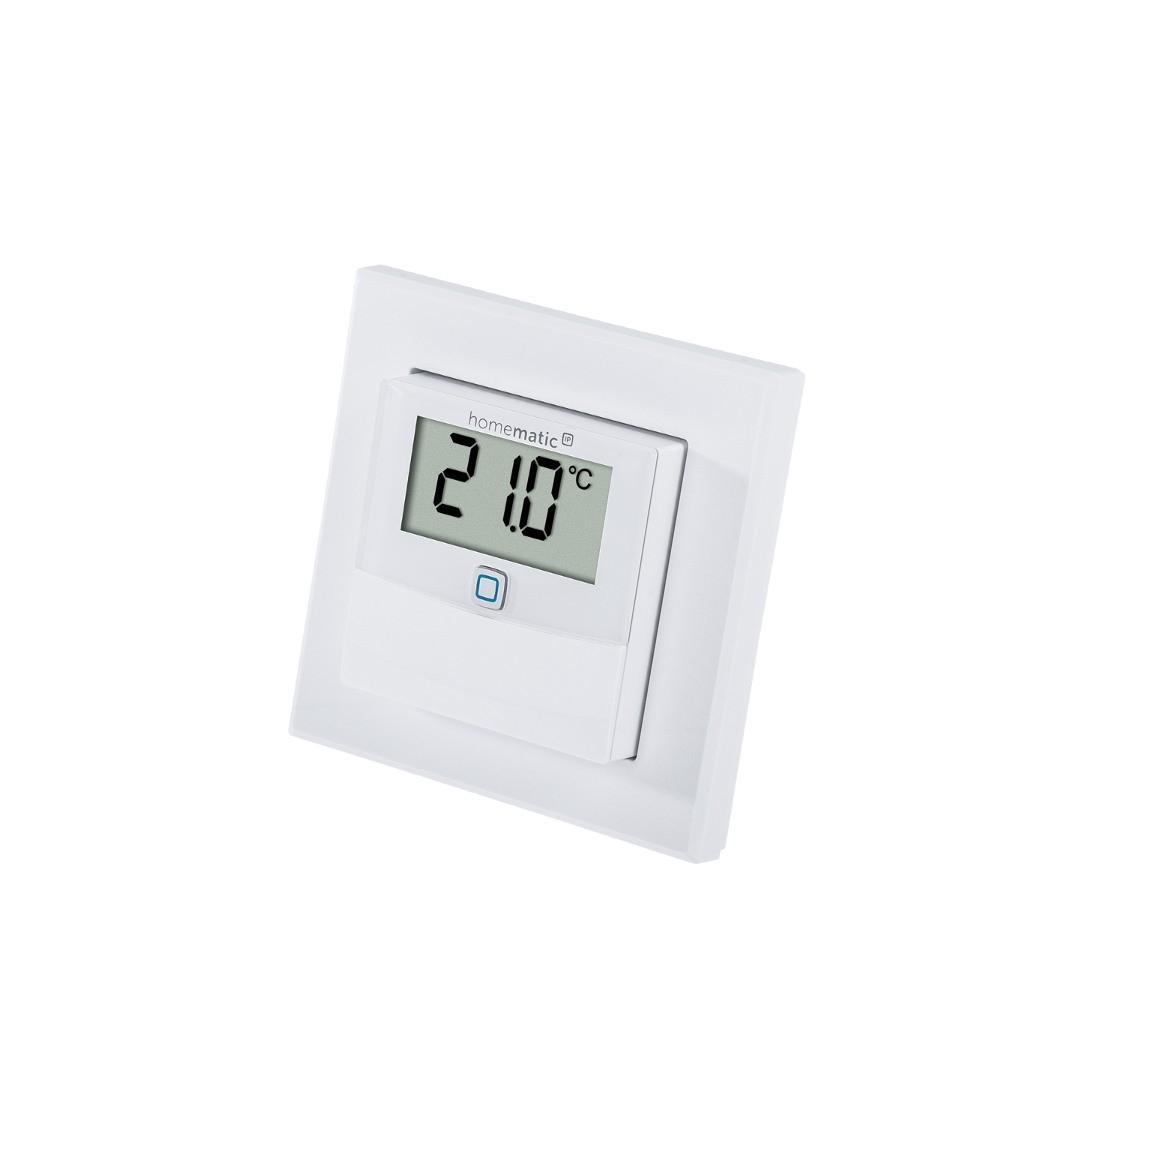 Homematic IP Temperatur- und Luftfeuchtigkeitssensor mit Display – innen in weiß schräg